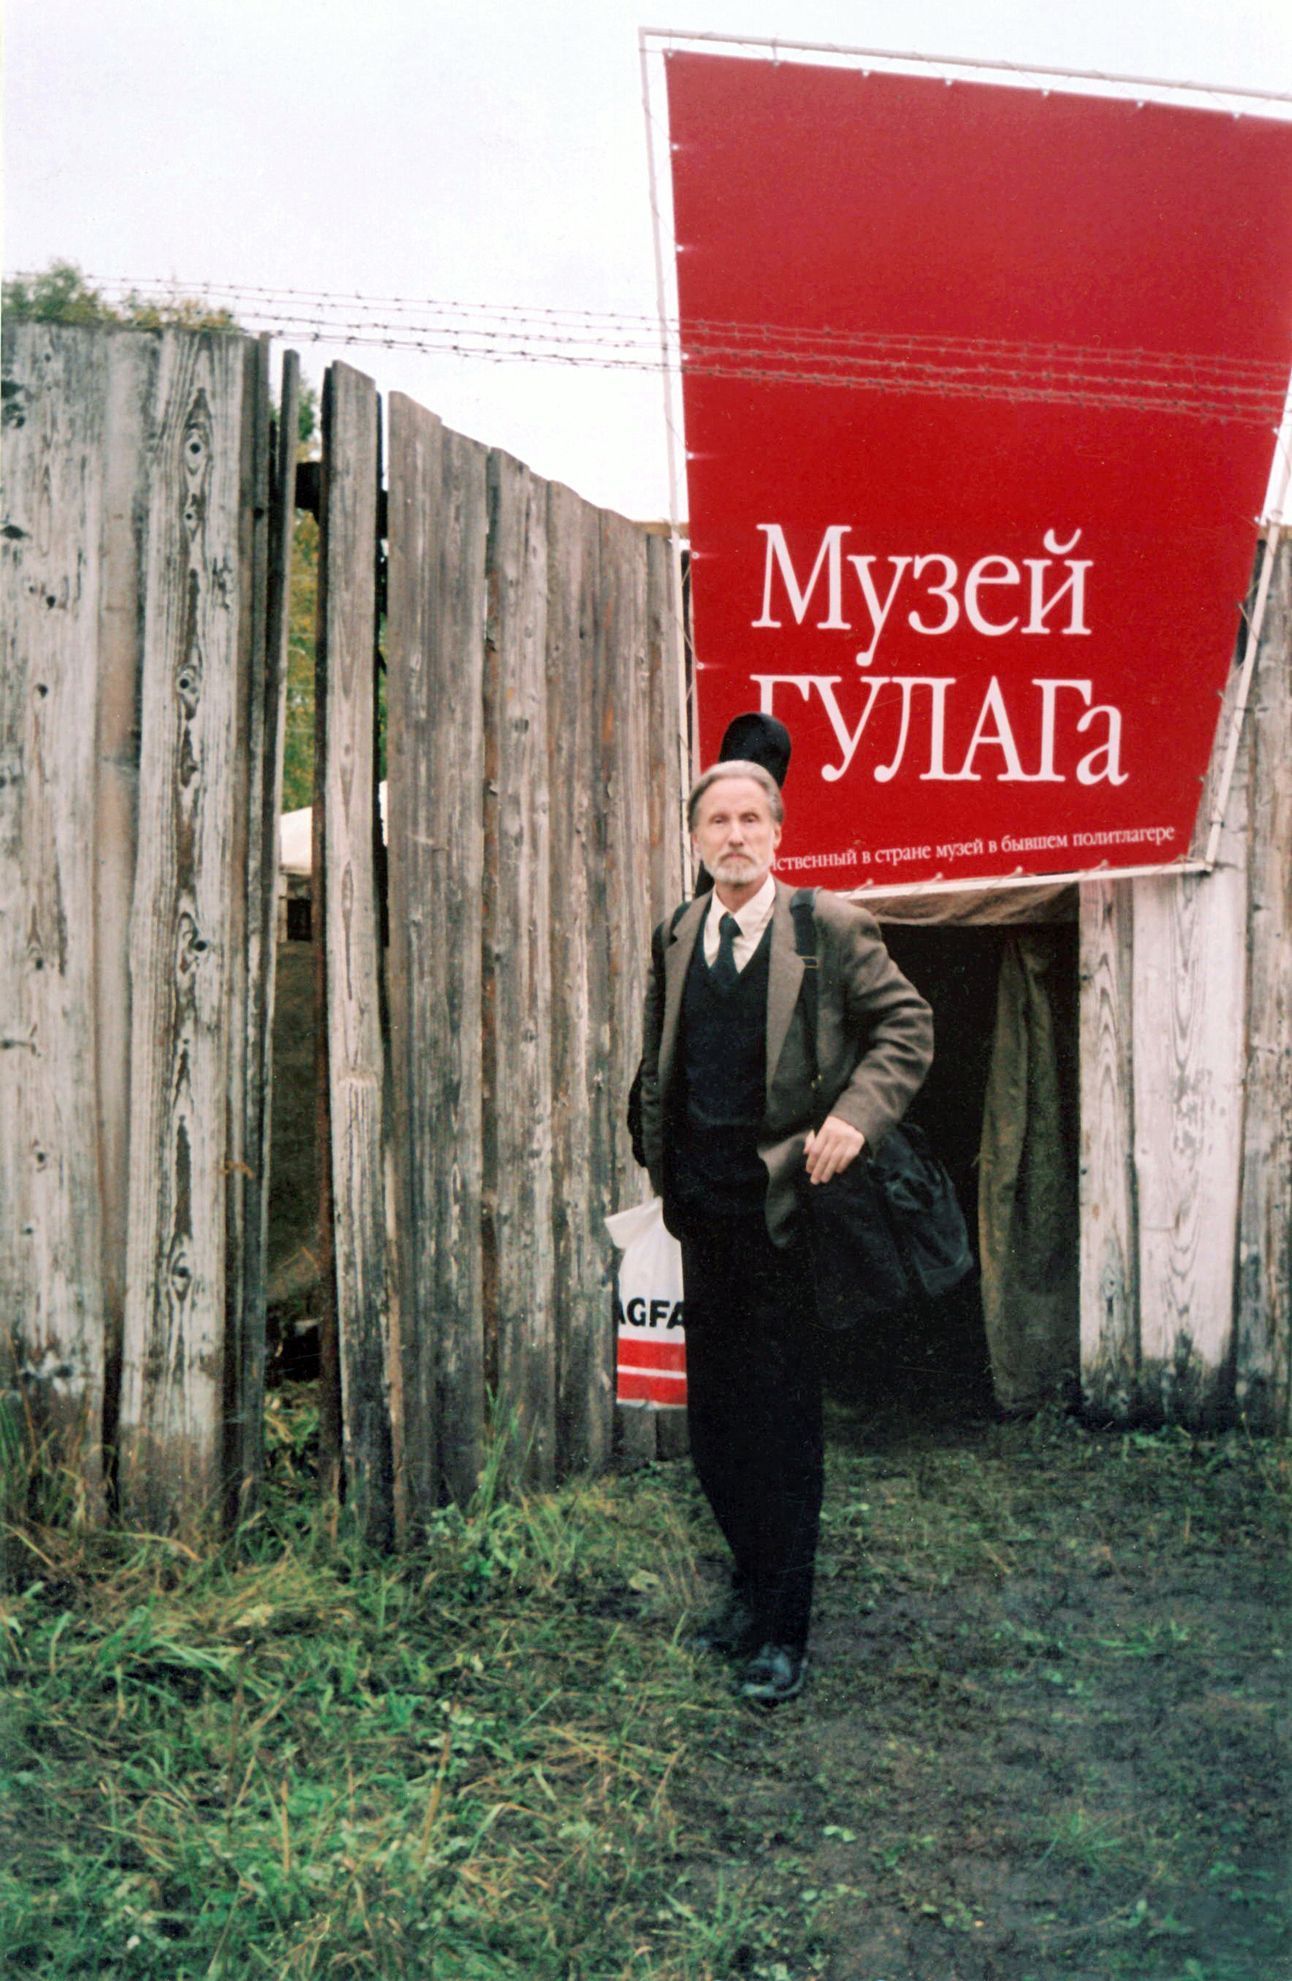 Nikolaj Nikolajevič Braun